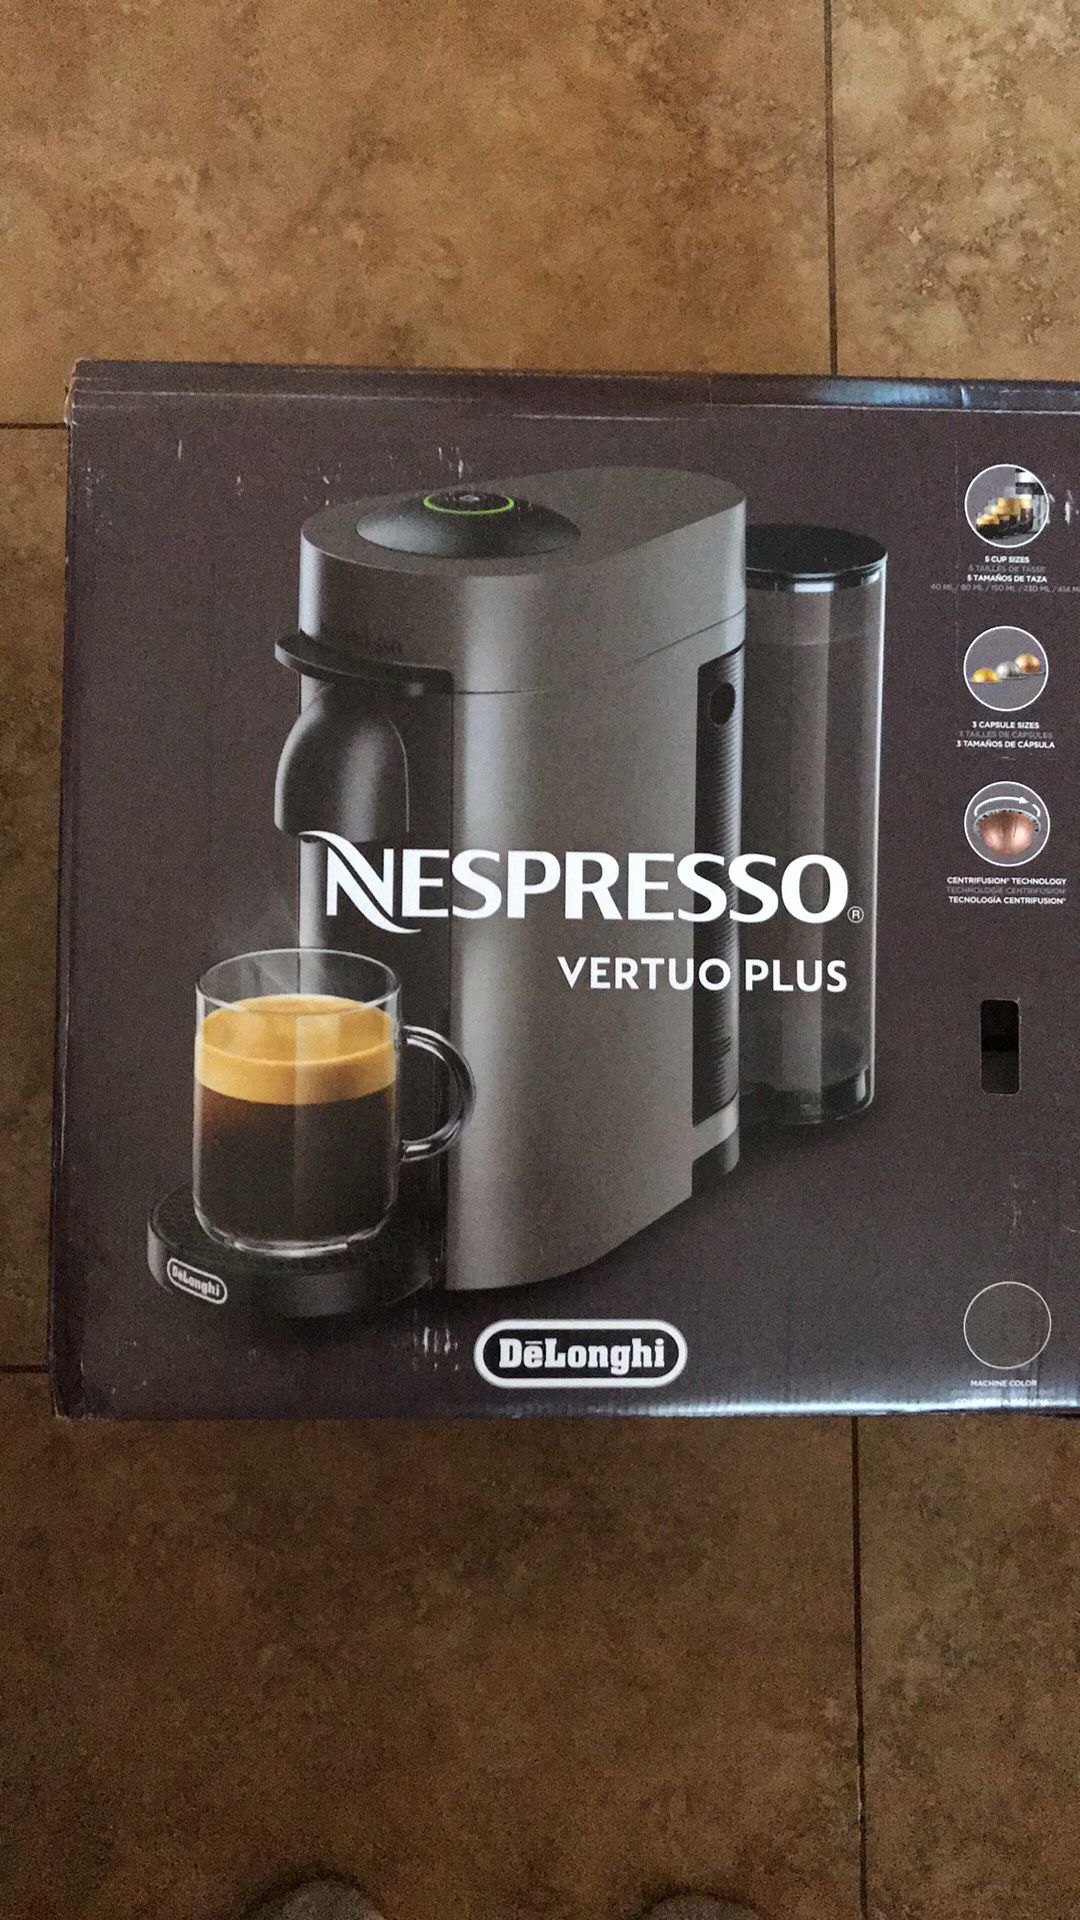 Brand new in box Nespresso Espresso coffee maker